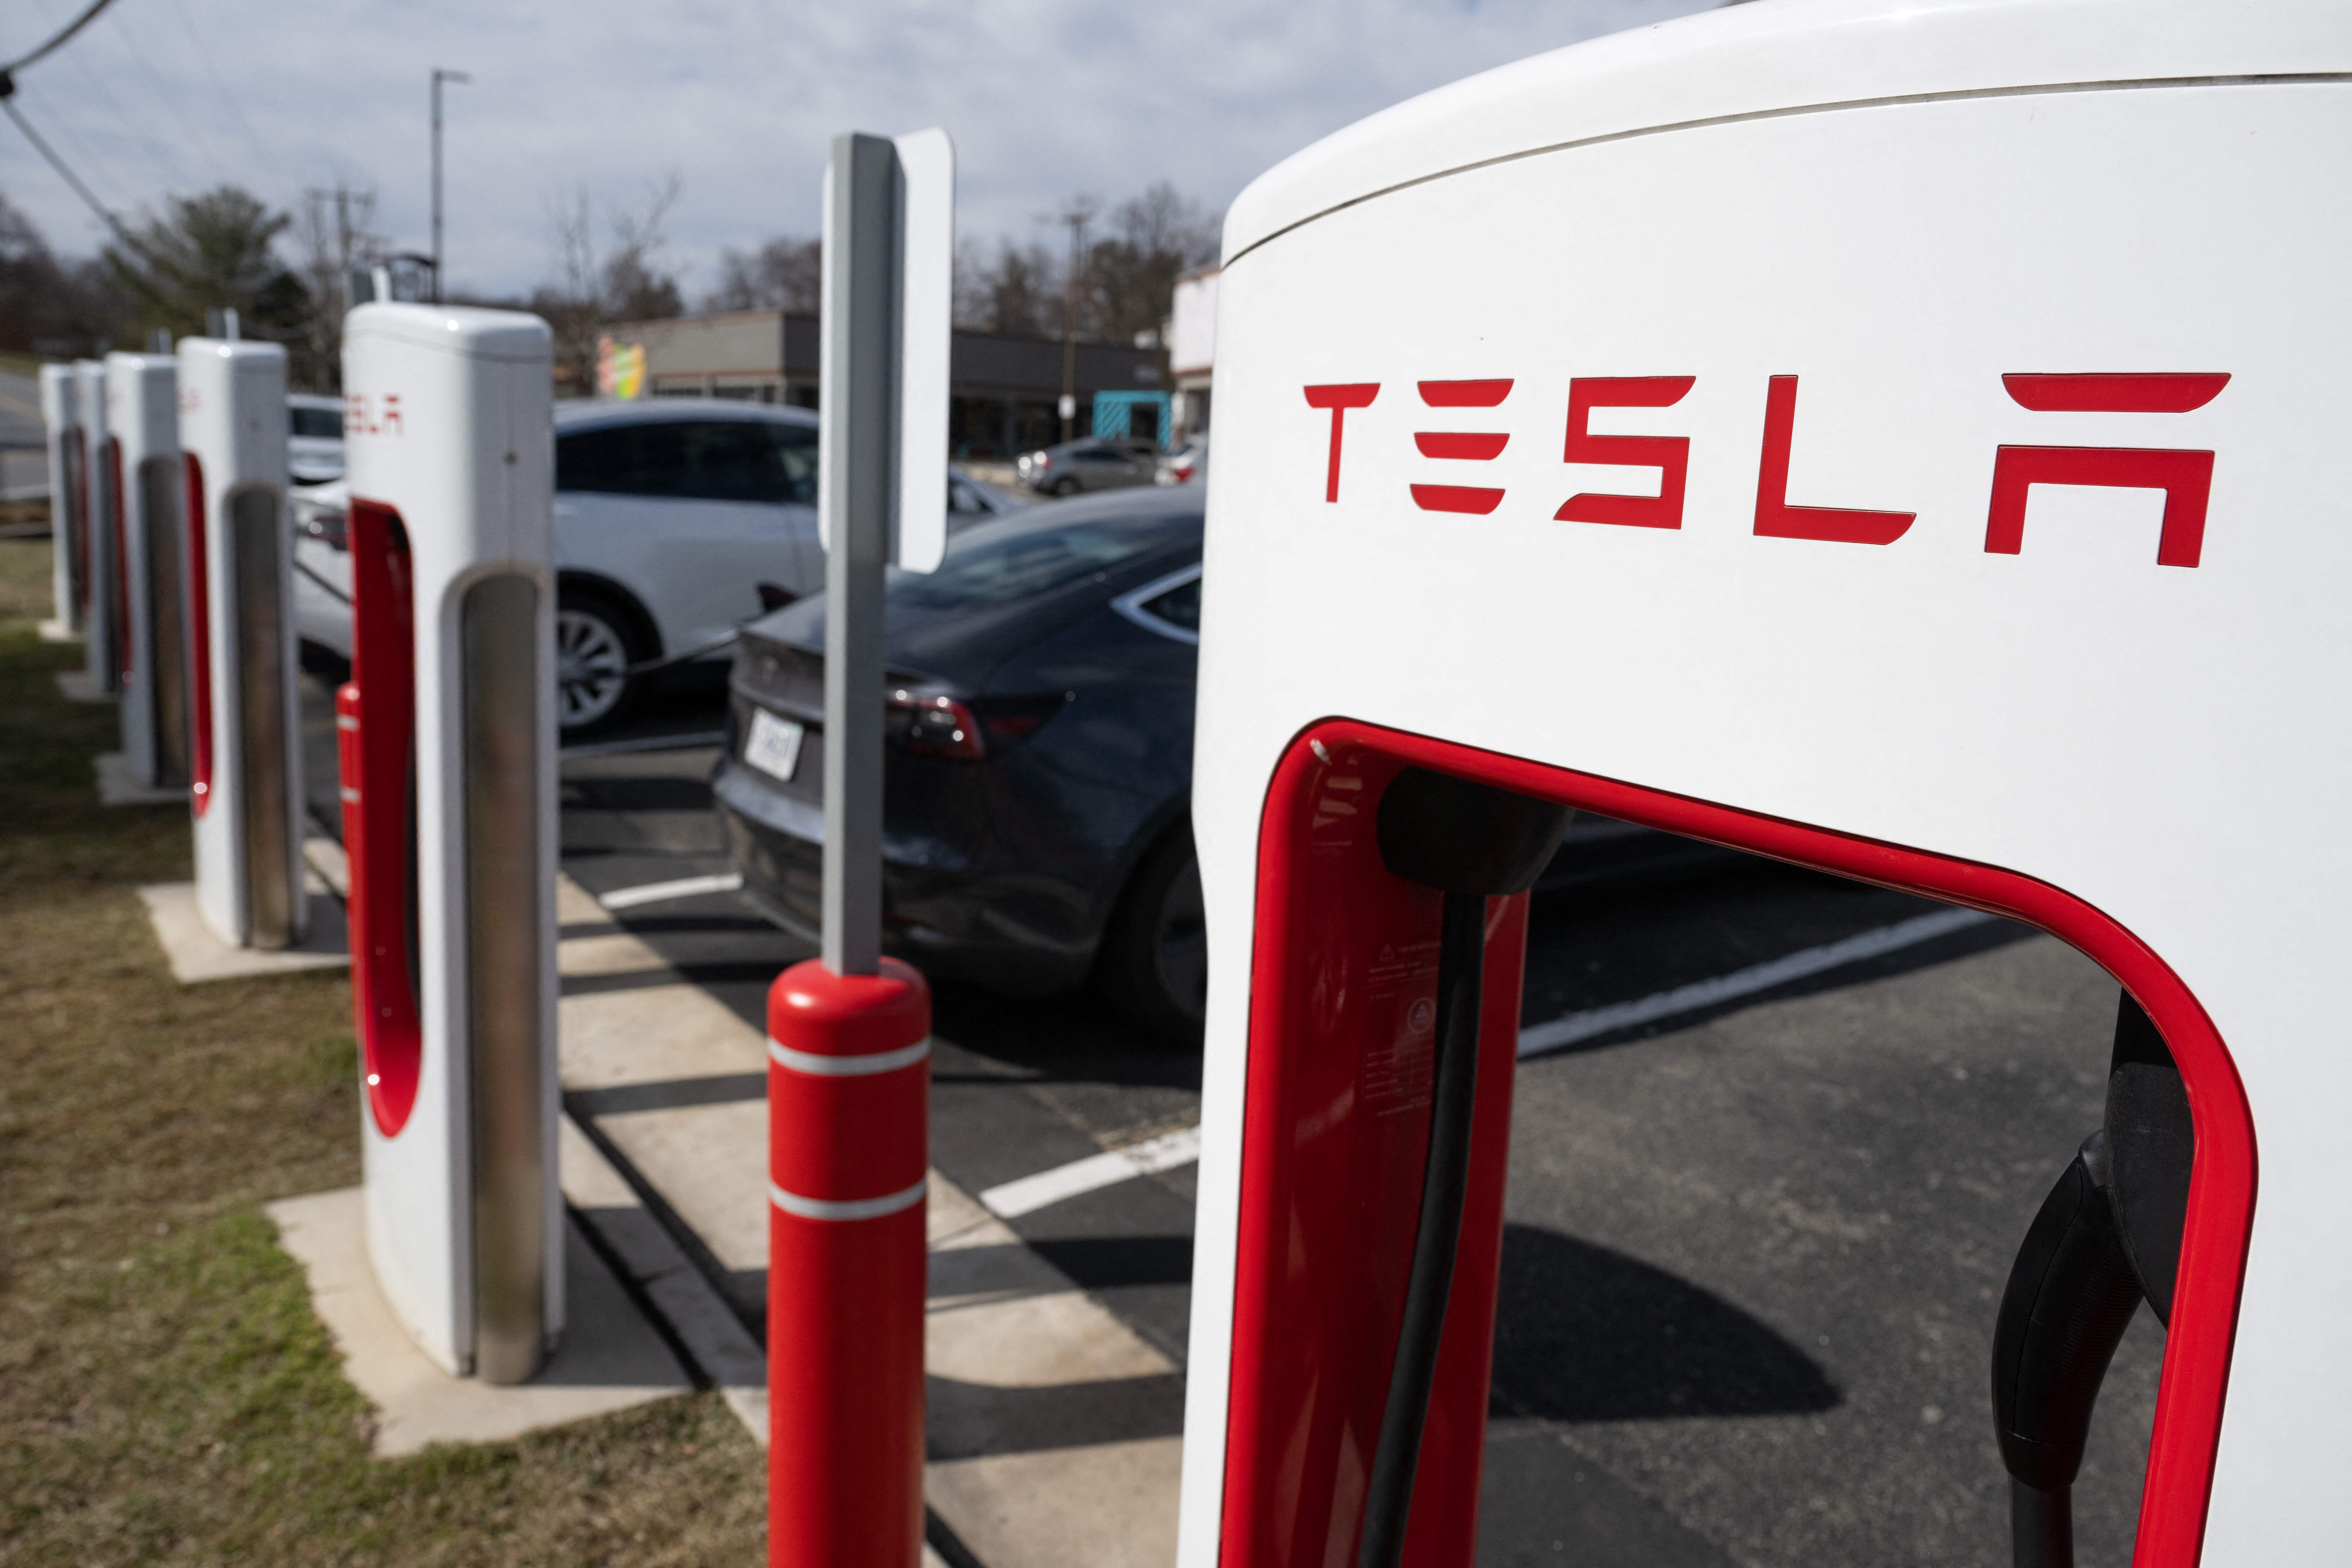 Teslas chargeant aux Superchargeurs